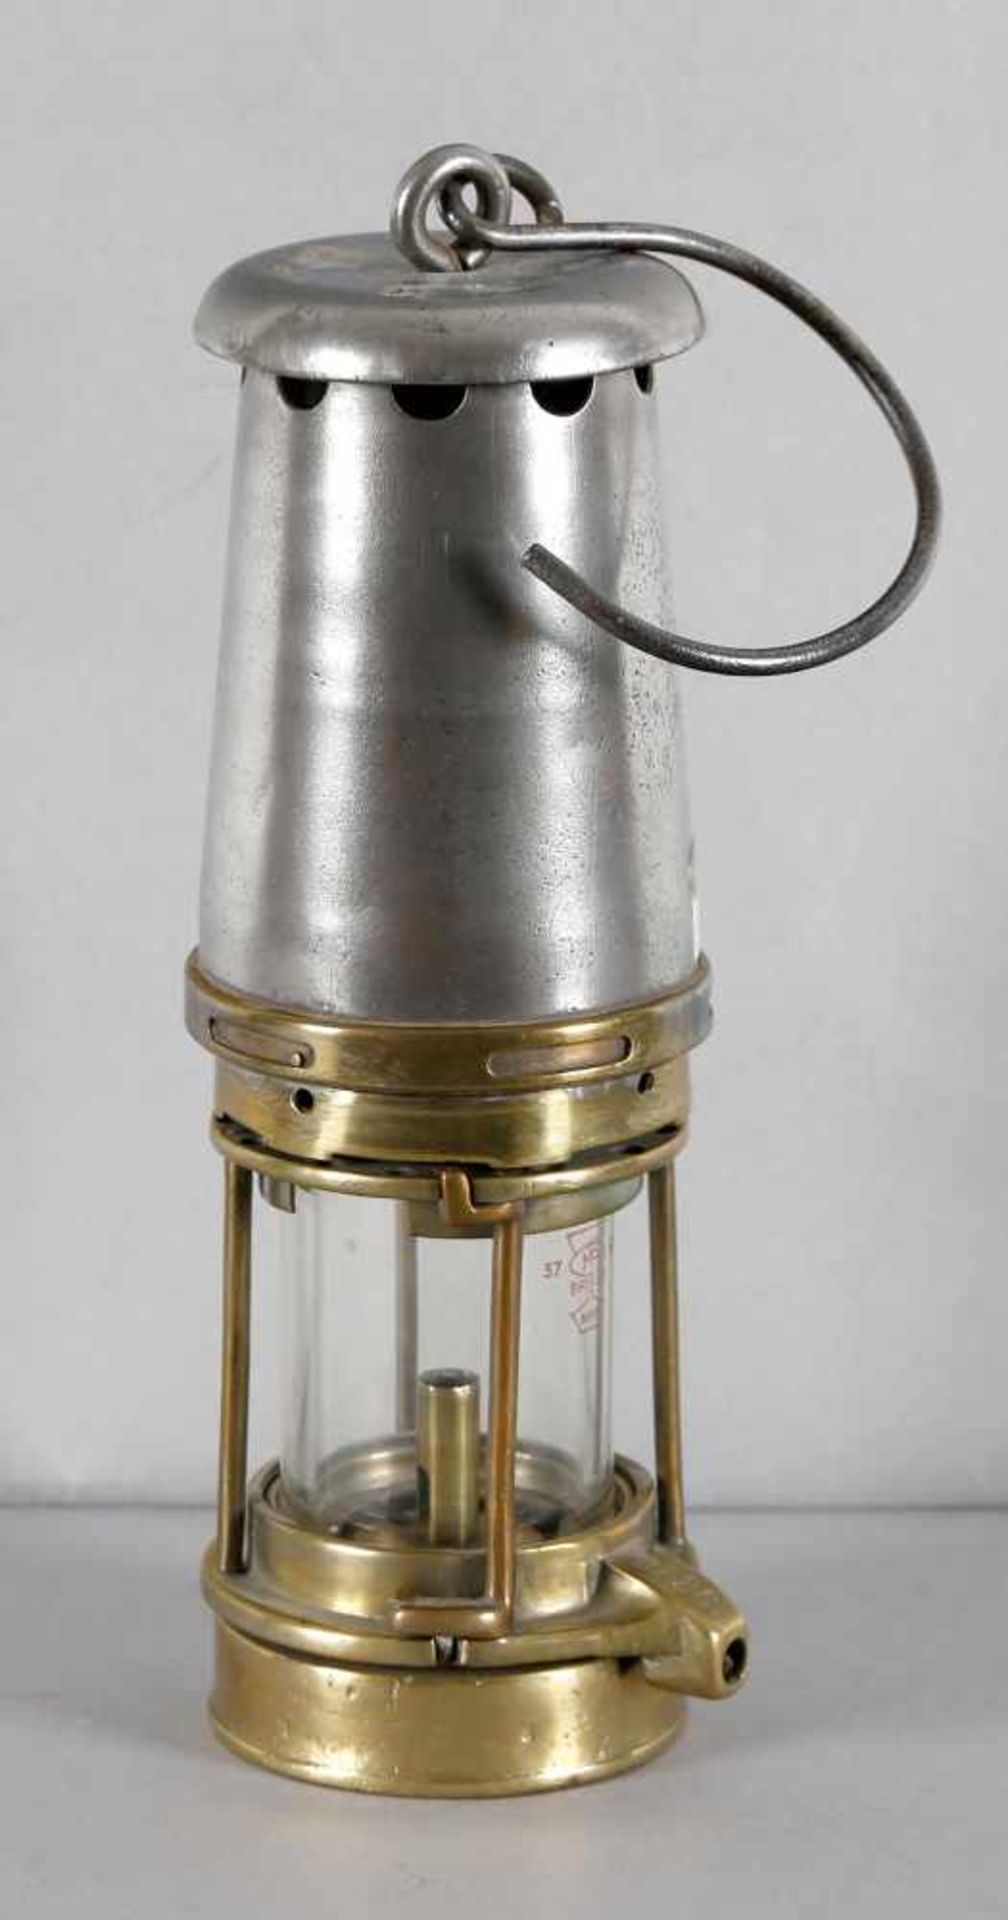 Öl-Wetterlampe, England um 1920-30, Eisen und Messingabschraubbarer Marsautmantel, horizontaler